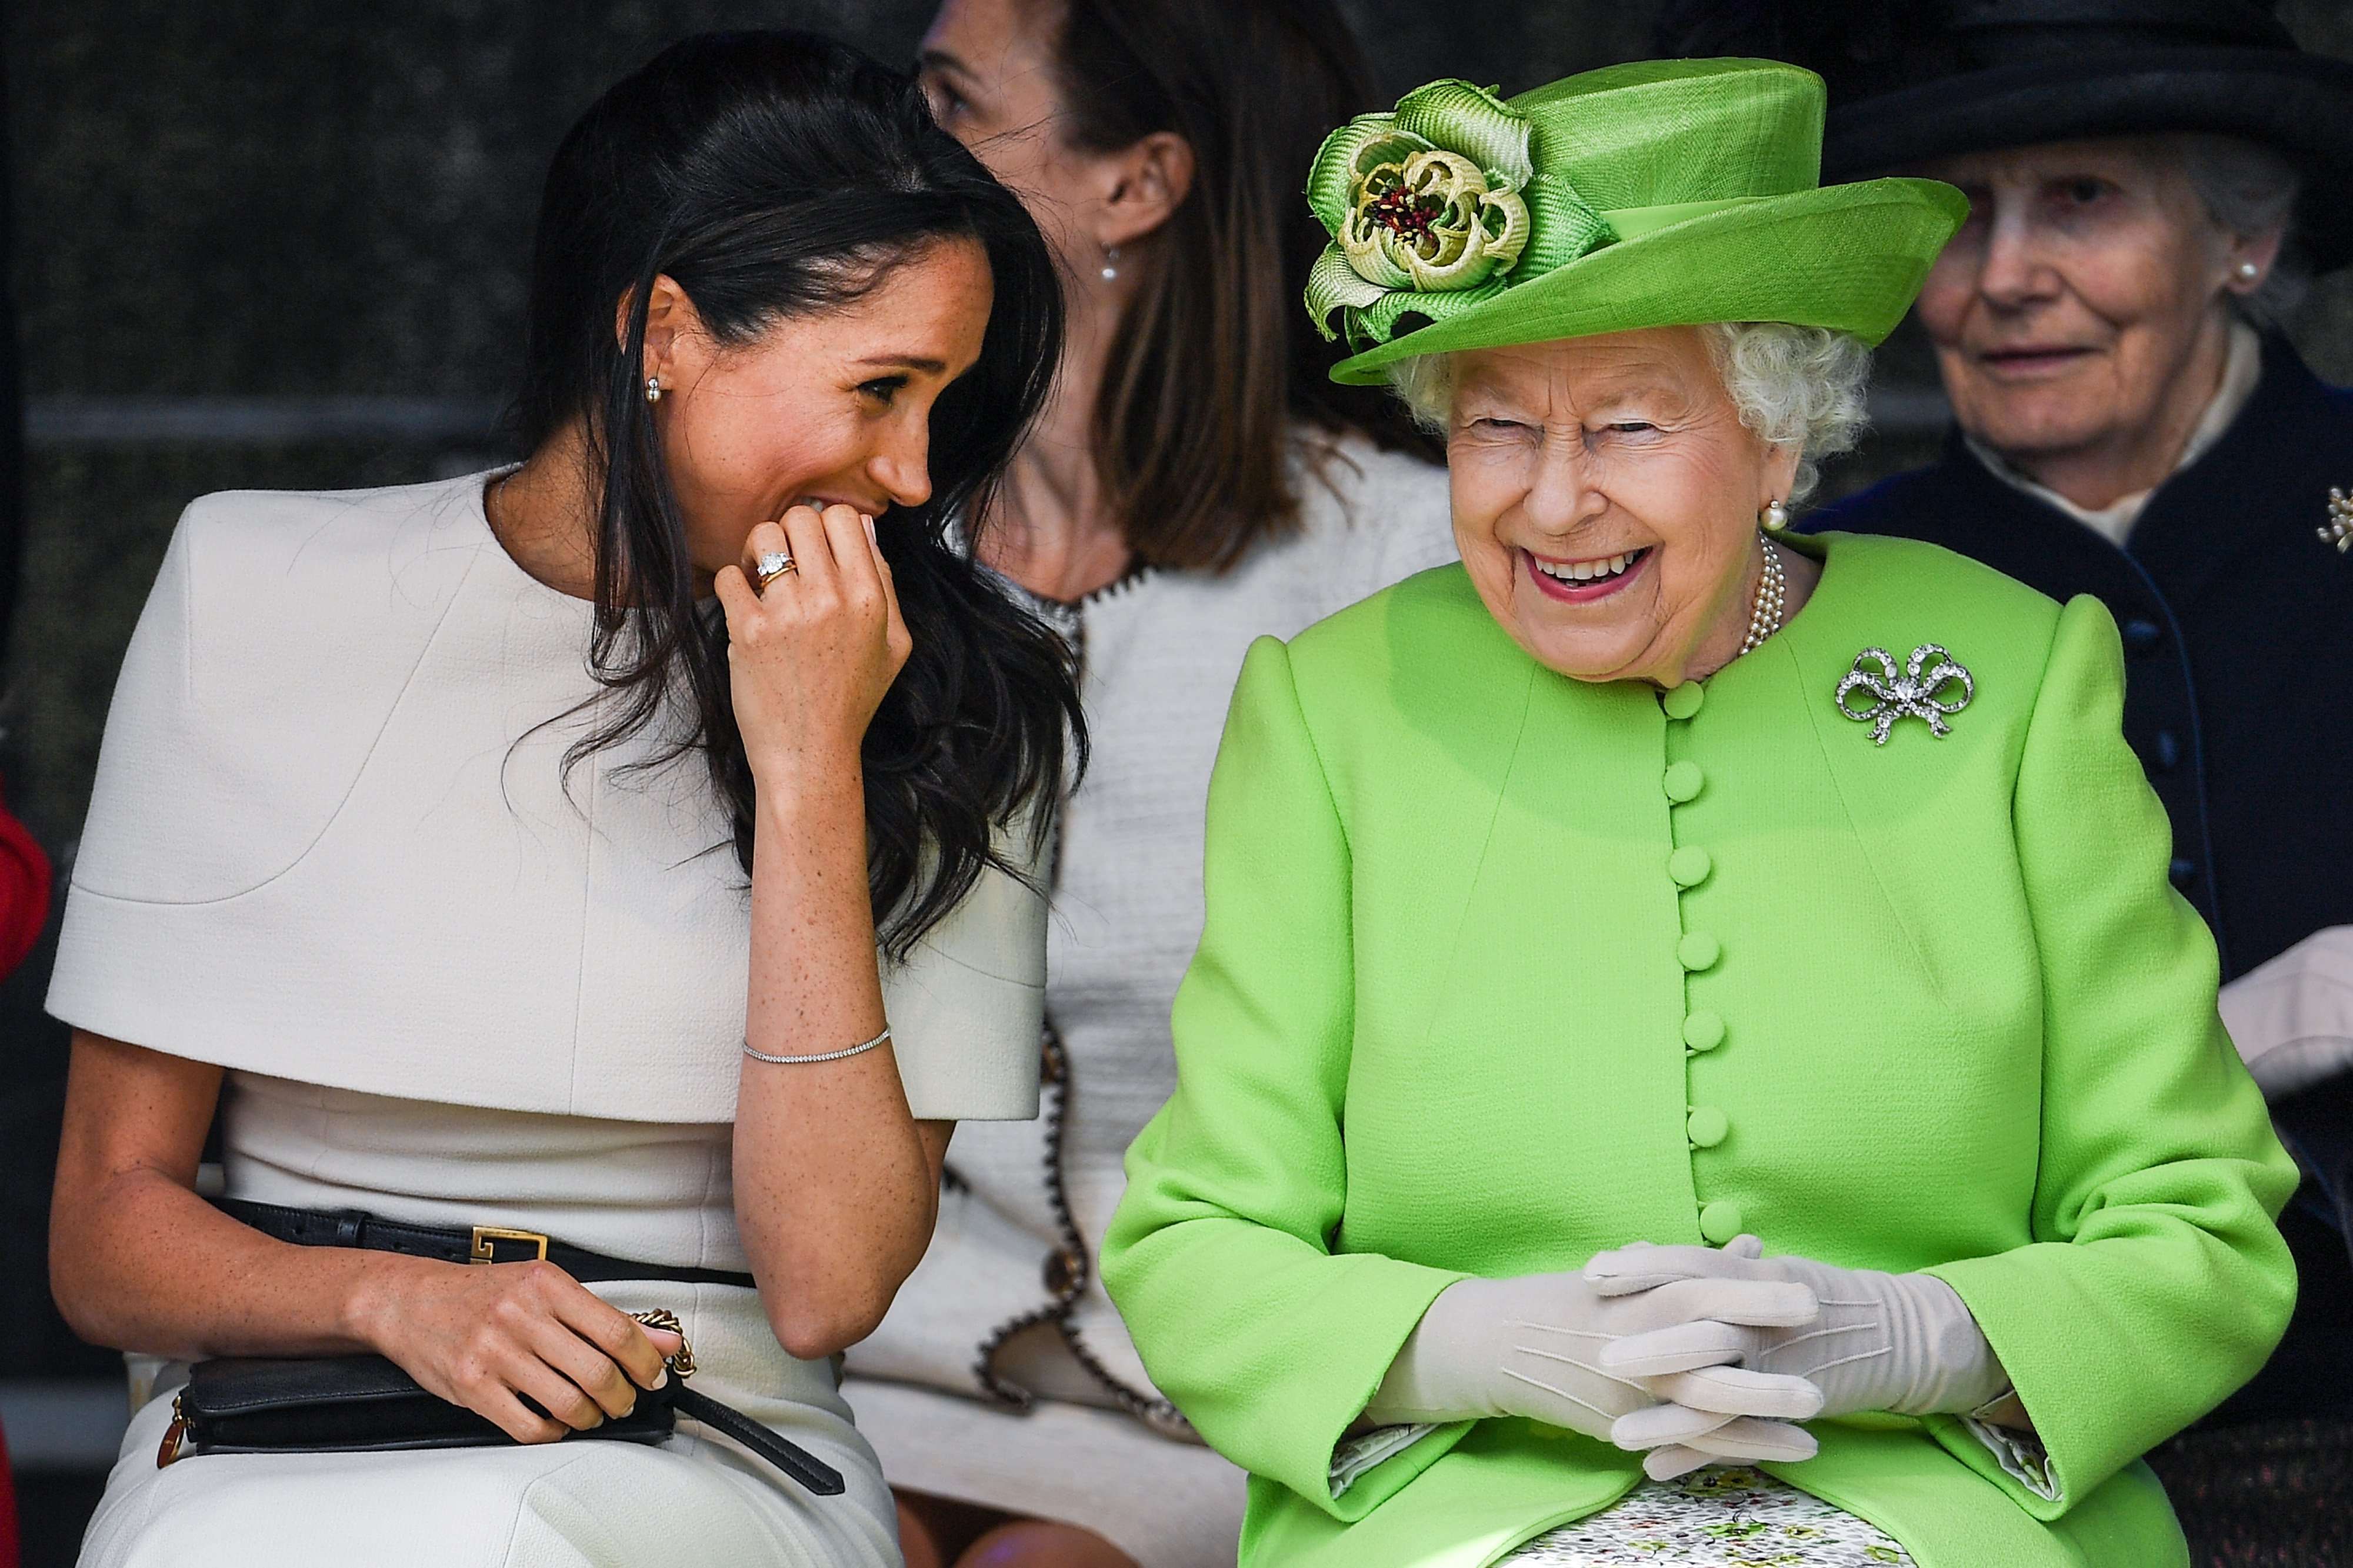 La reina Elizabeth II riendo junto a Meghan, duquesa de Sussex, durante una ceremonia para abrir el nuevo puente Mersey Gateway, el 14 de junio de 2018 en Halton, Cheshire, Inglaterra. | Foto: Getty Images